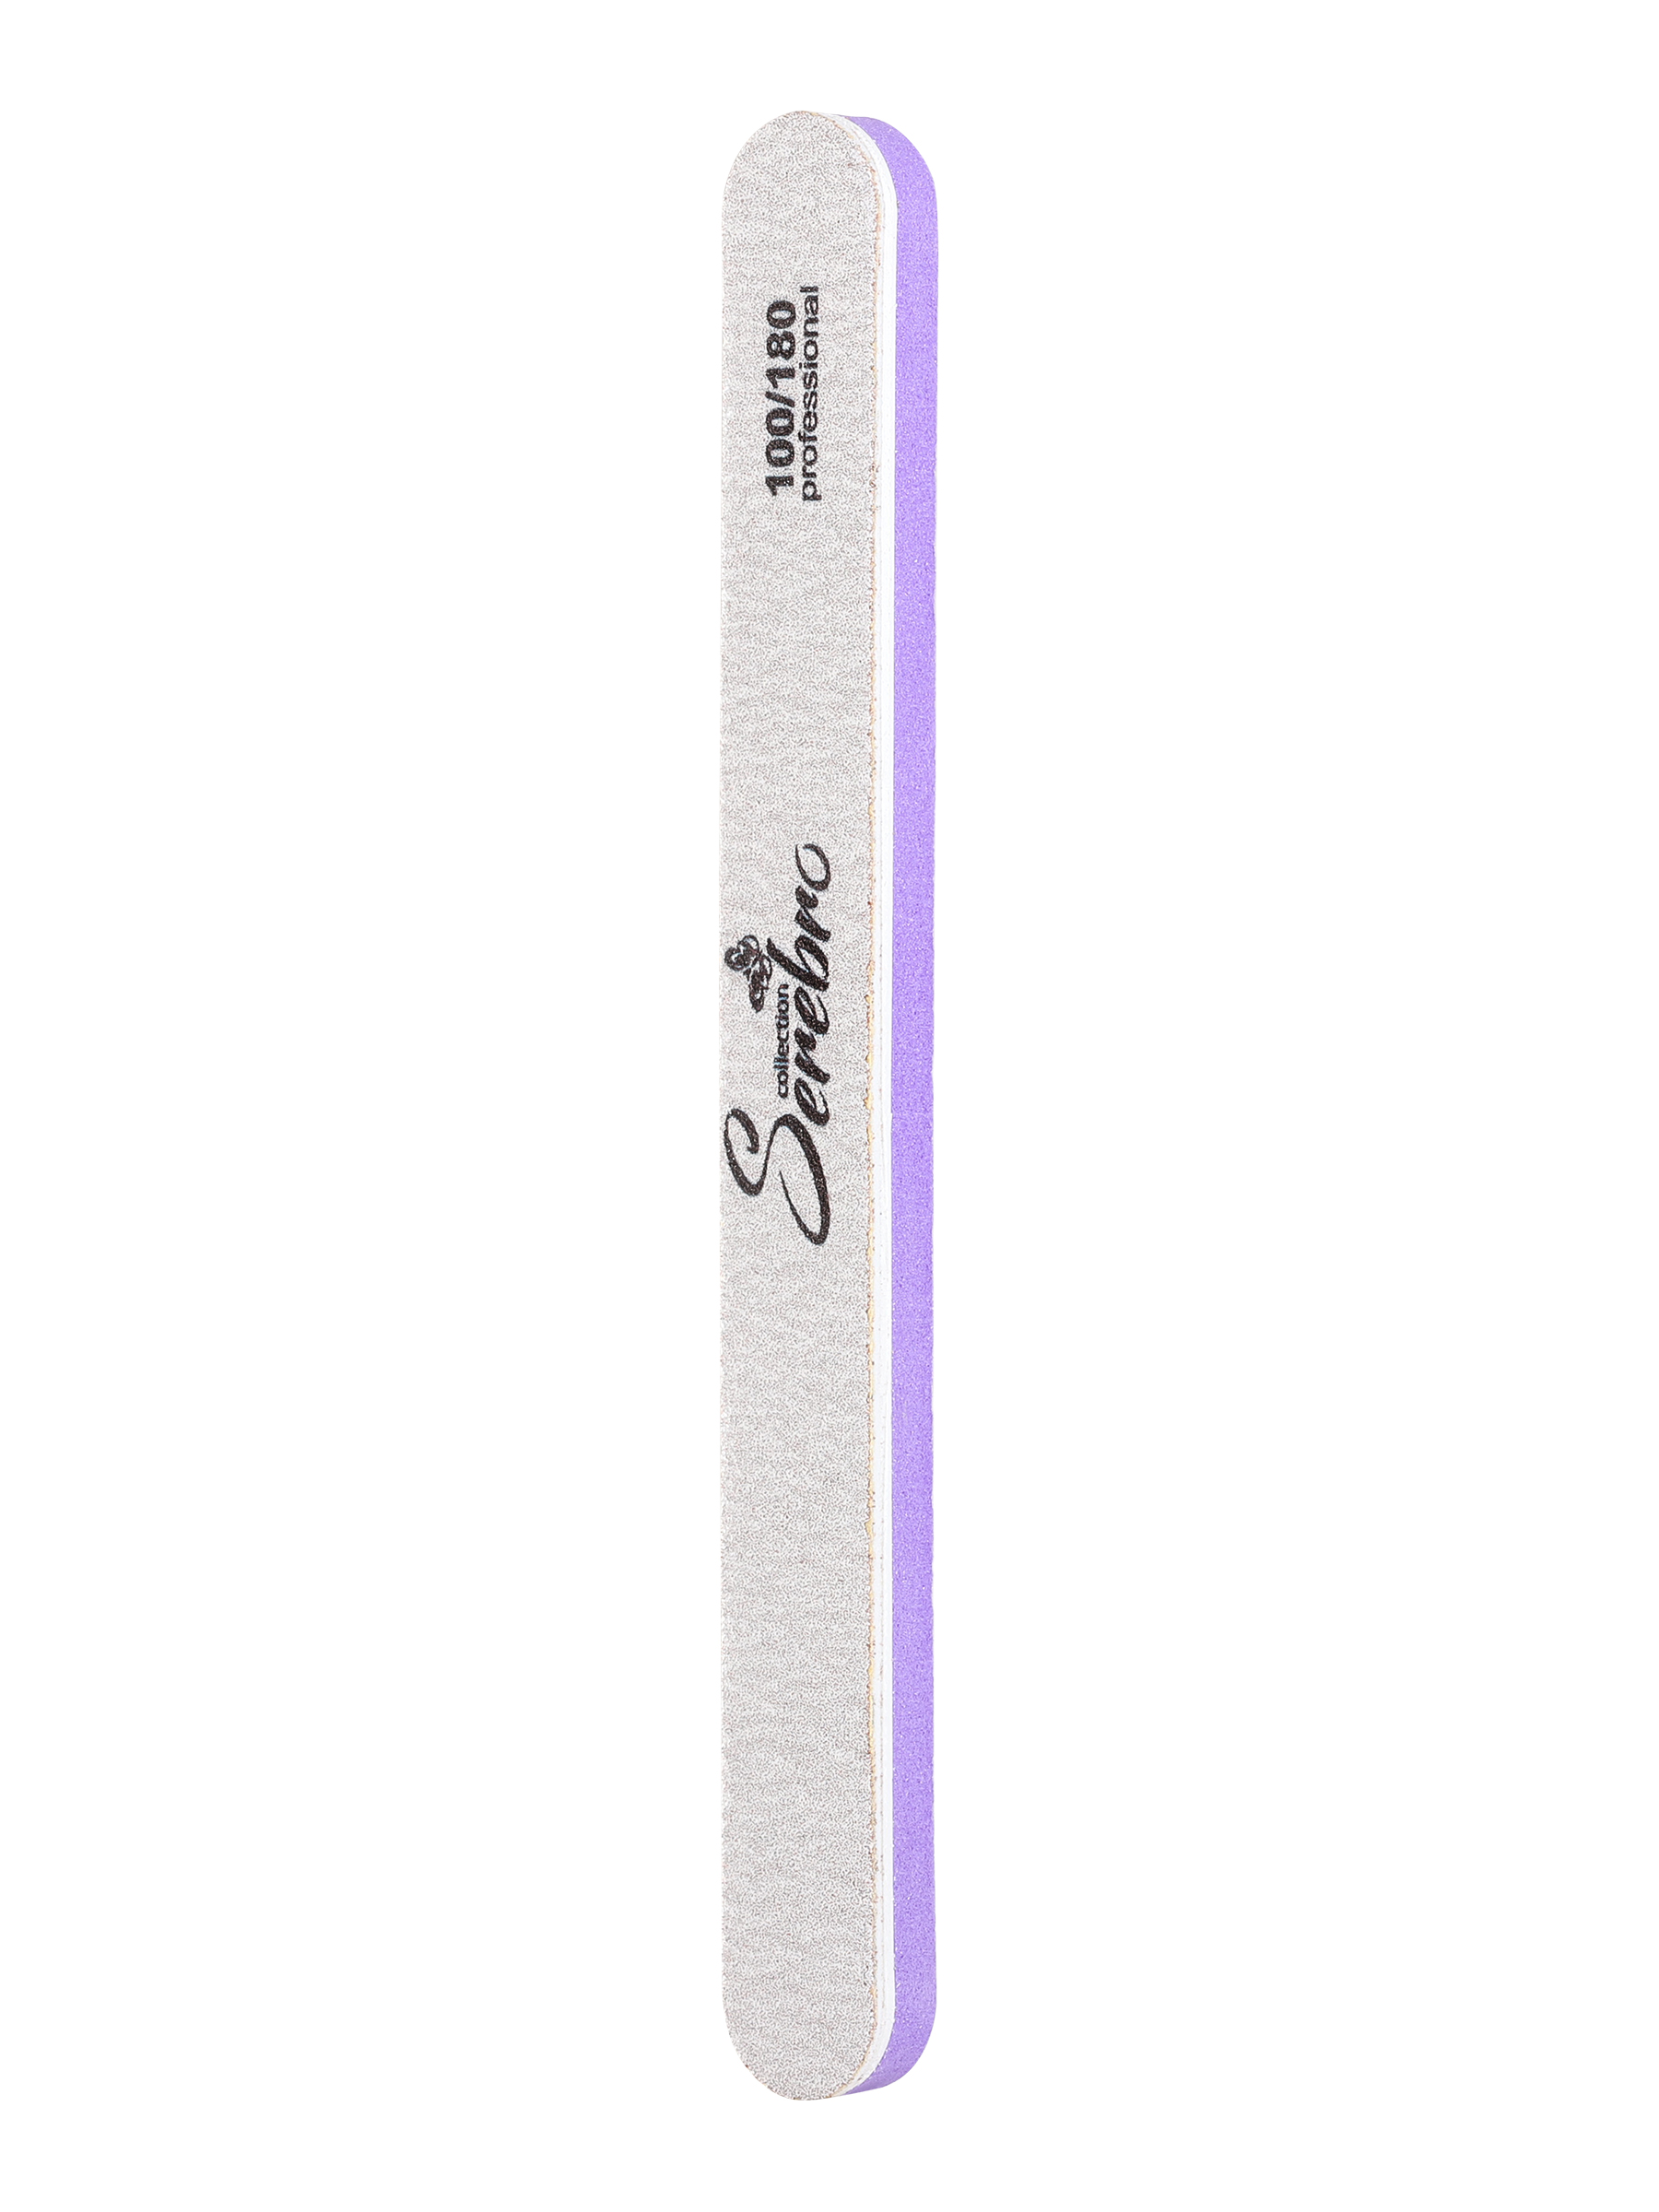 Пилка для ногтей Serebro одноразовая, профессиональная, шлифовщик для маникюра, 100/180 пилка для педикюра technicom tc 210